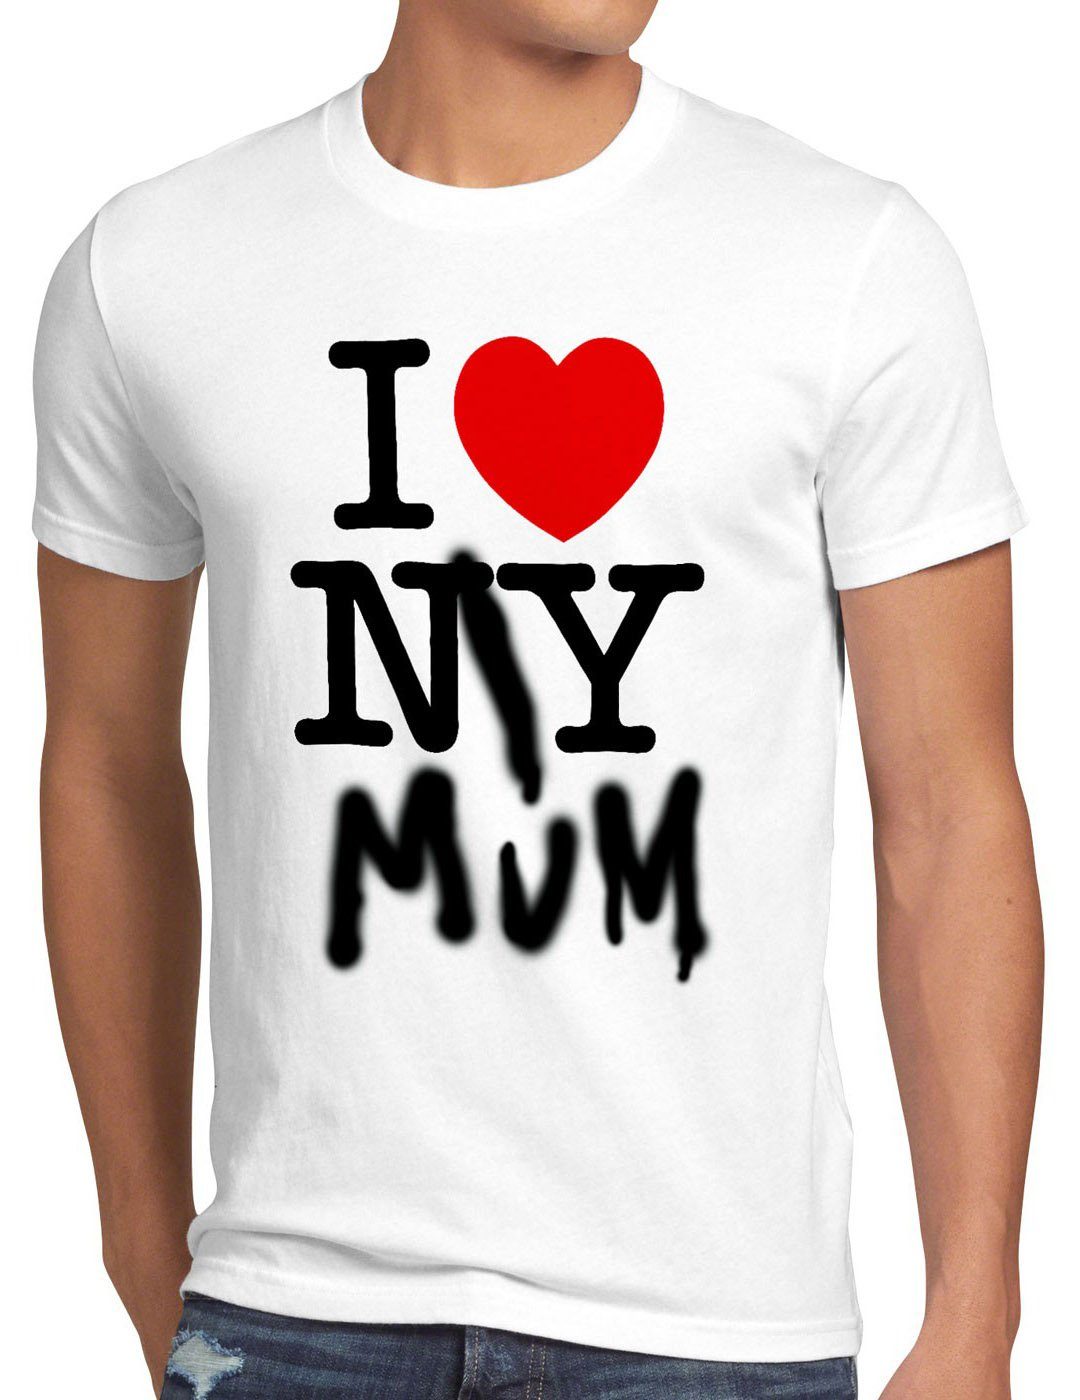 style3 Print-Shirt Herren T-Shirt I Mum amerika My herz Love usa new weiß york ny muttertag